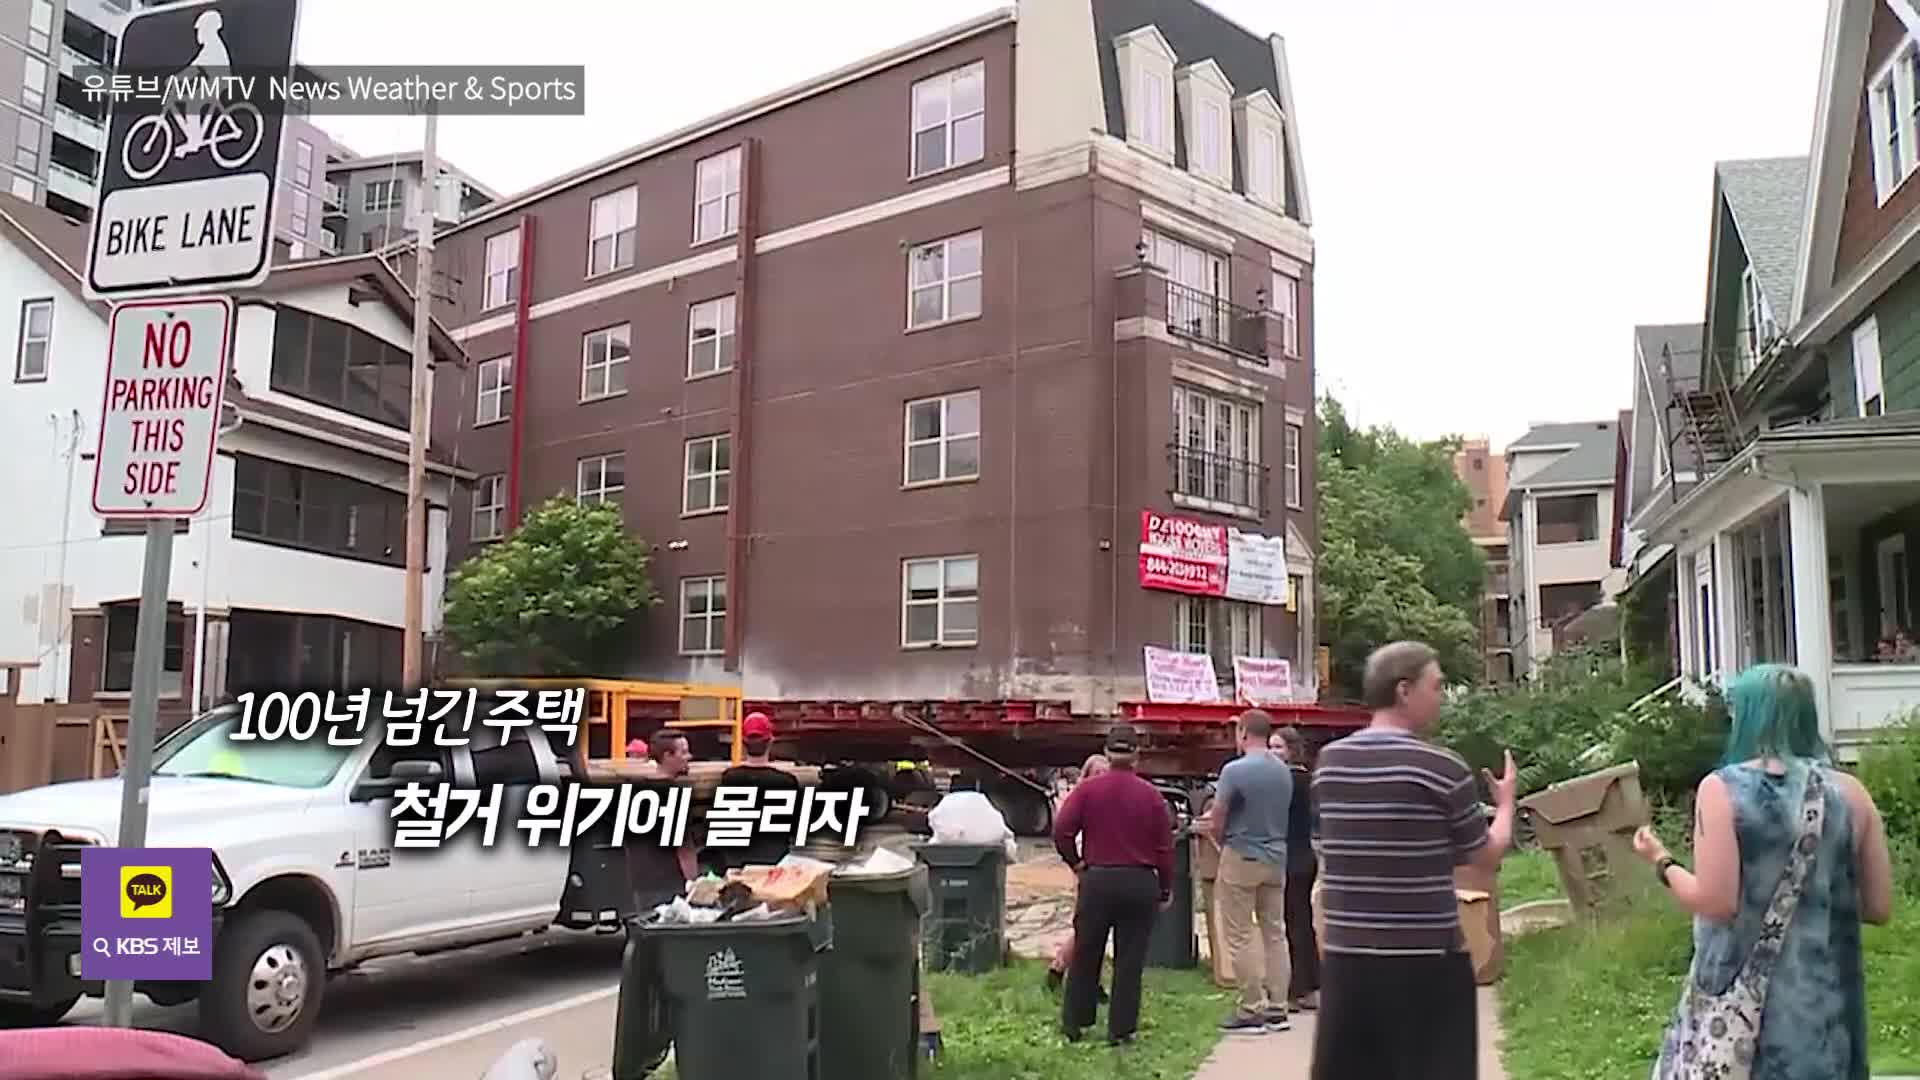 [오늘의 영상] 하울의 움직이는 성?…400톤 아파트 ‘통째 이사’